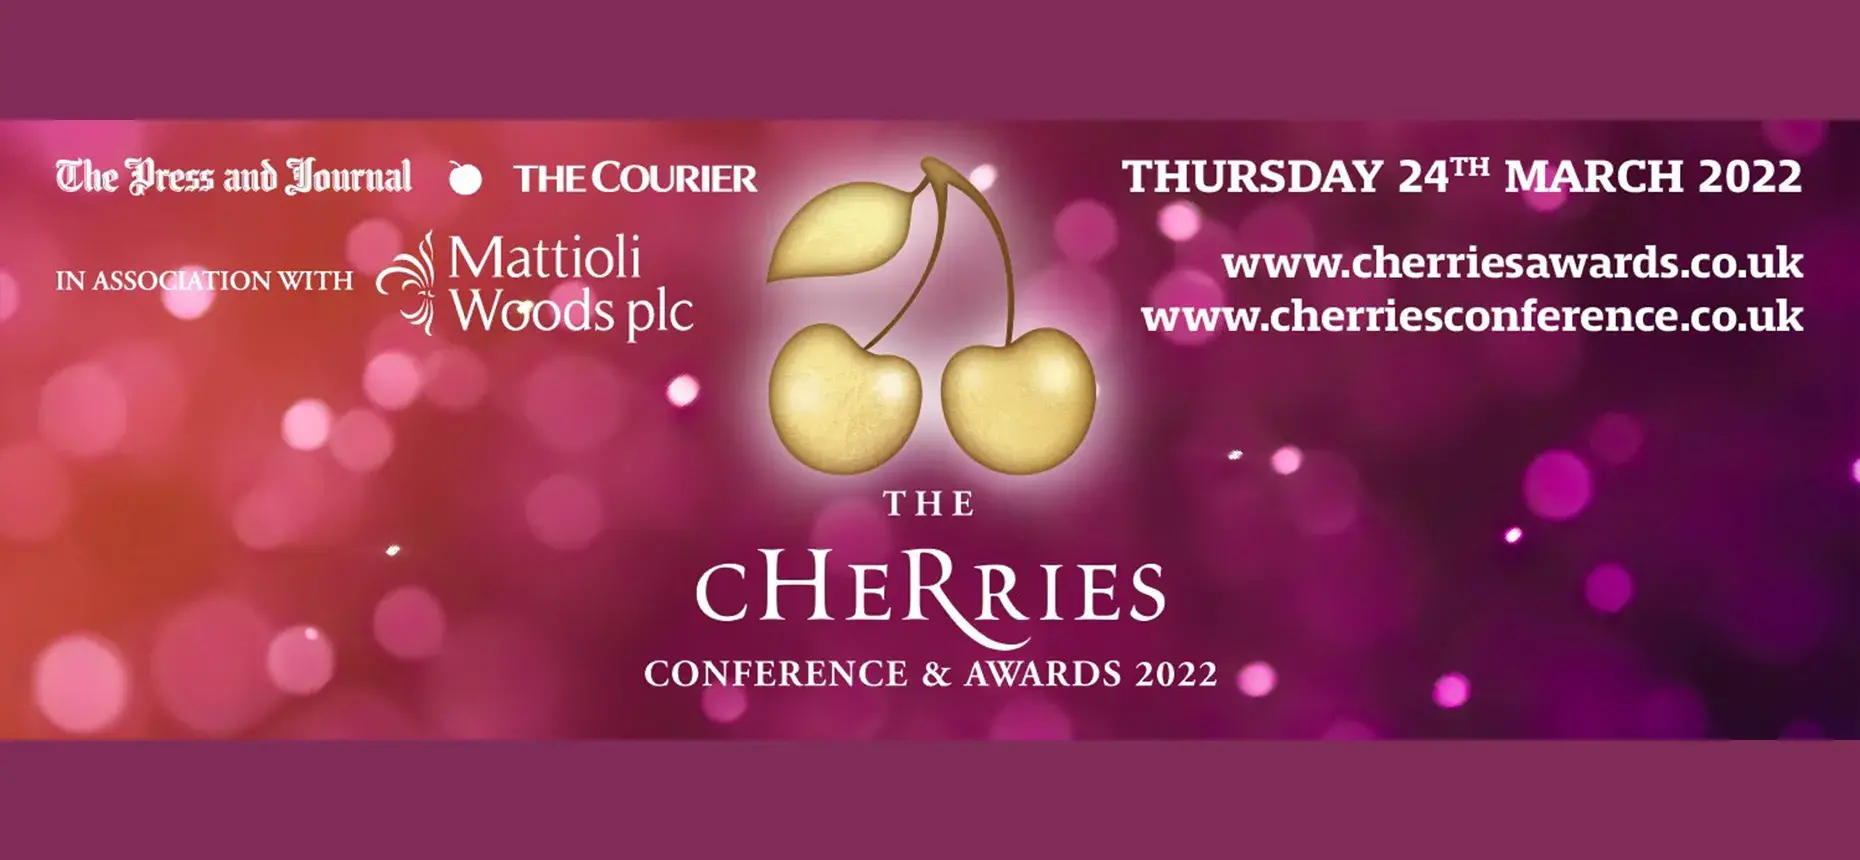 CHeRries Award 2022